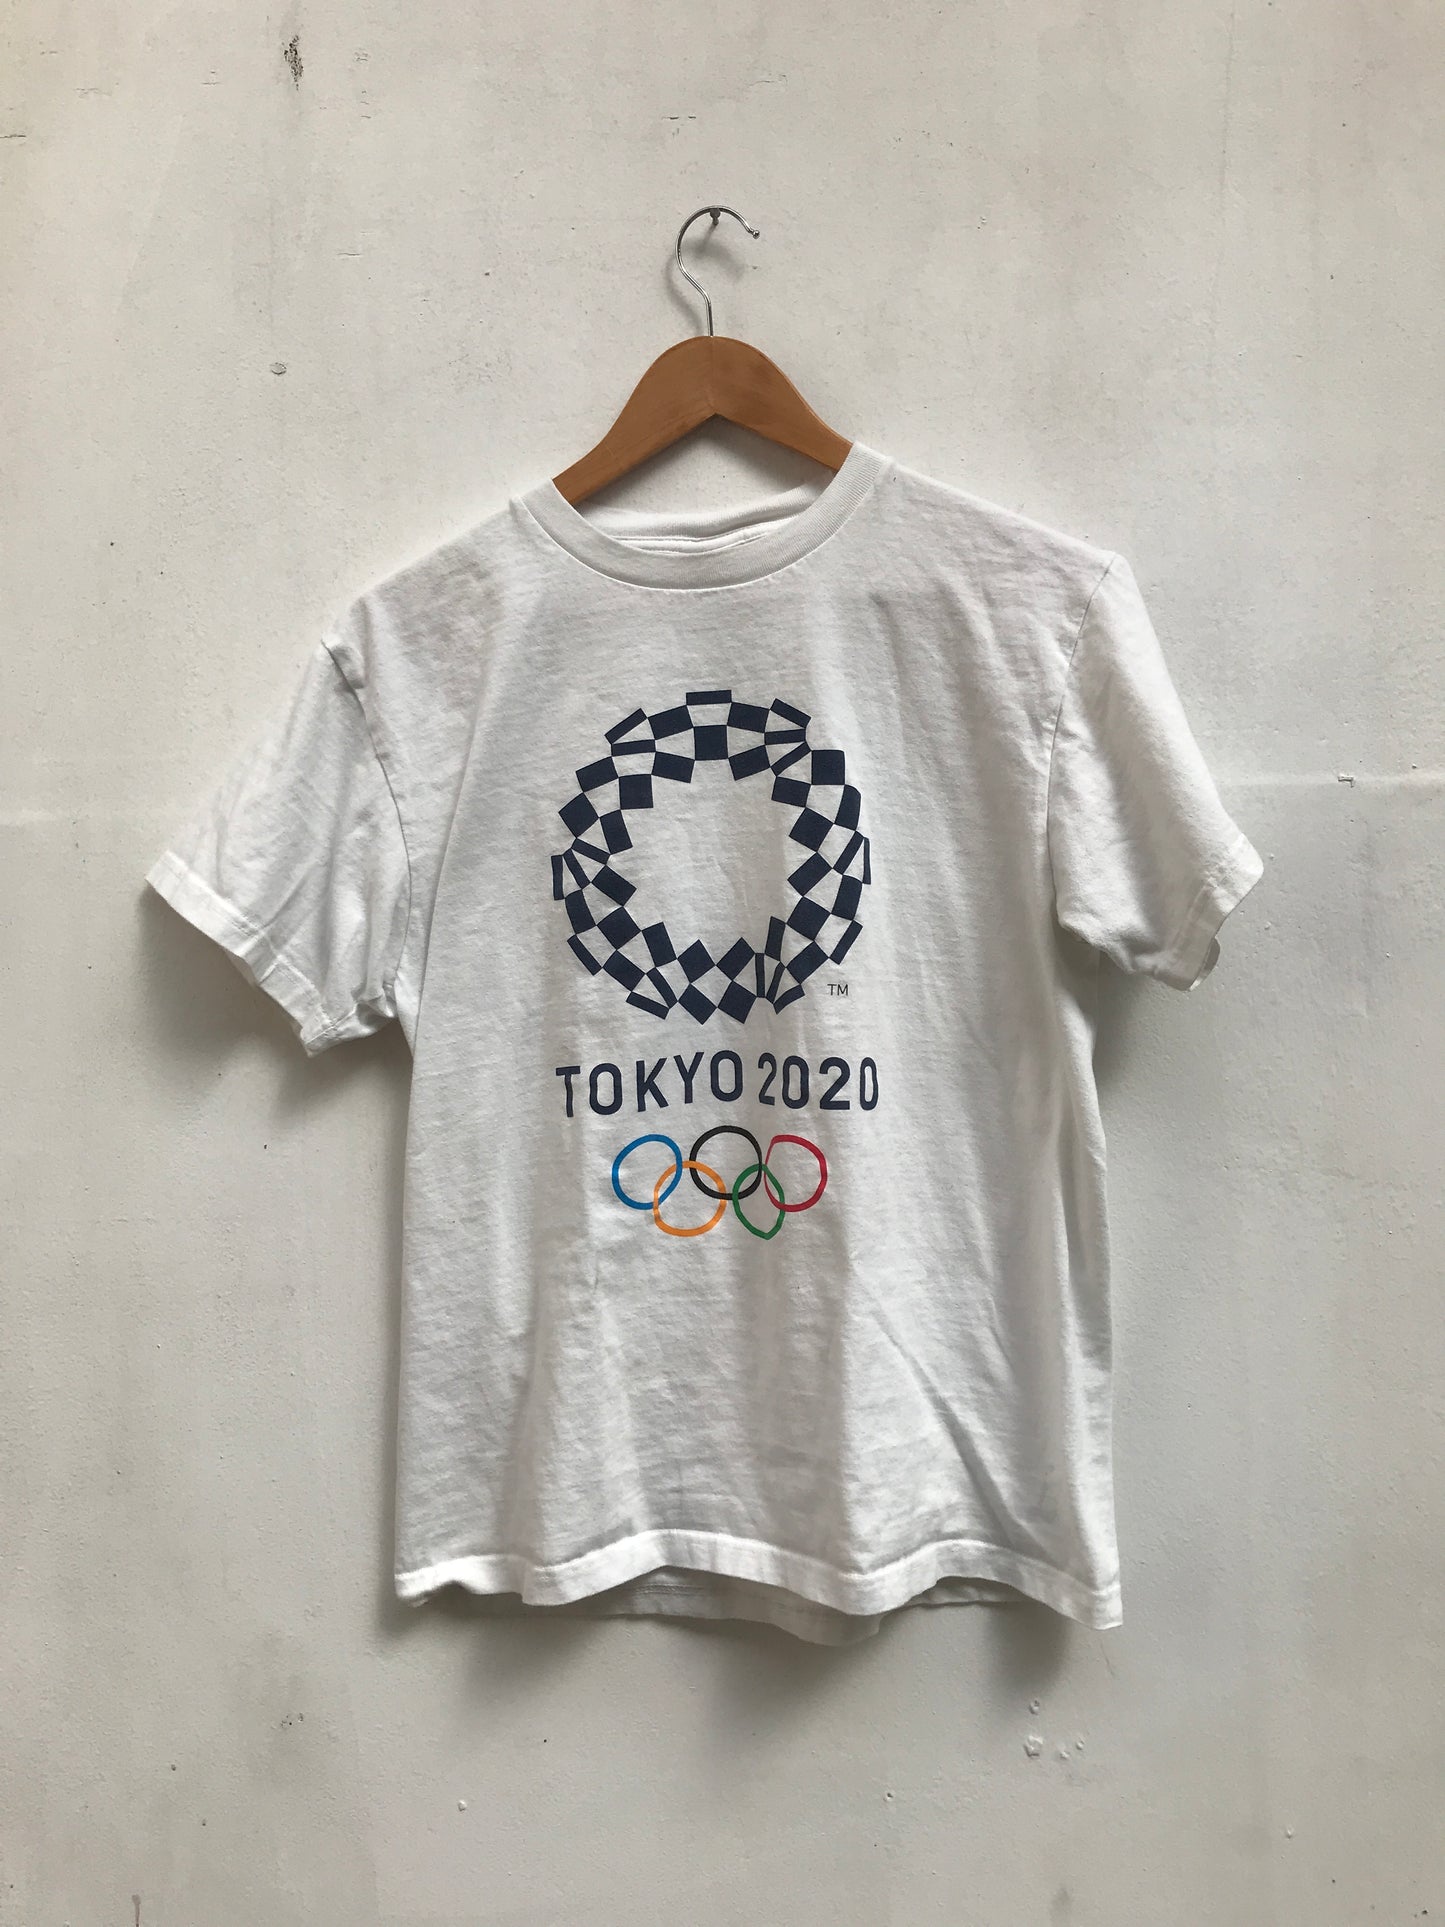 Tokyo 2020 T-shirt